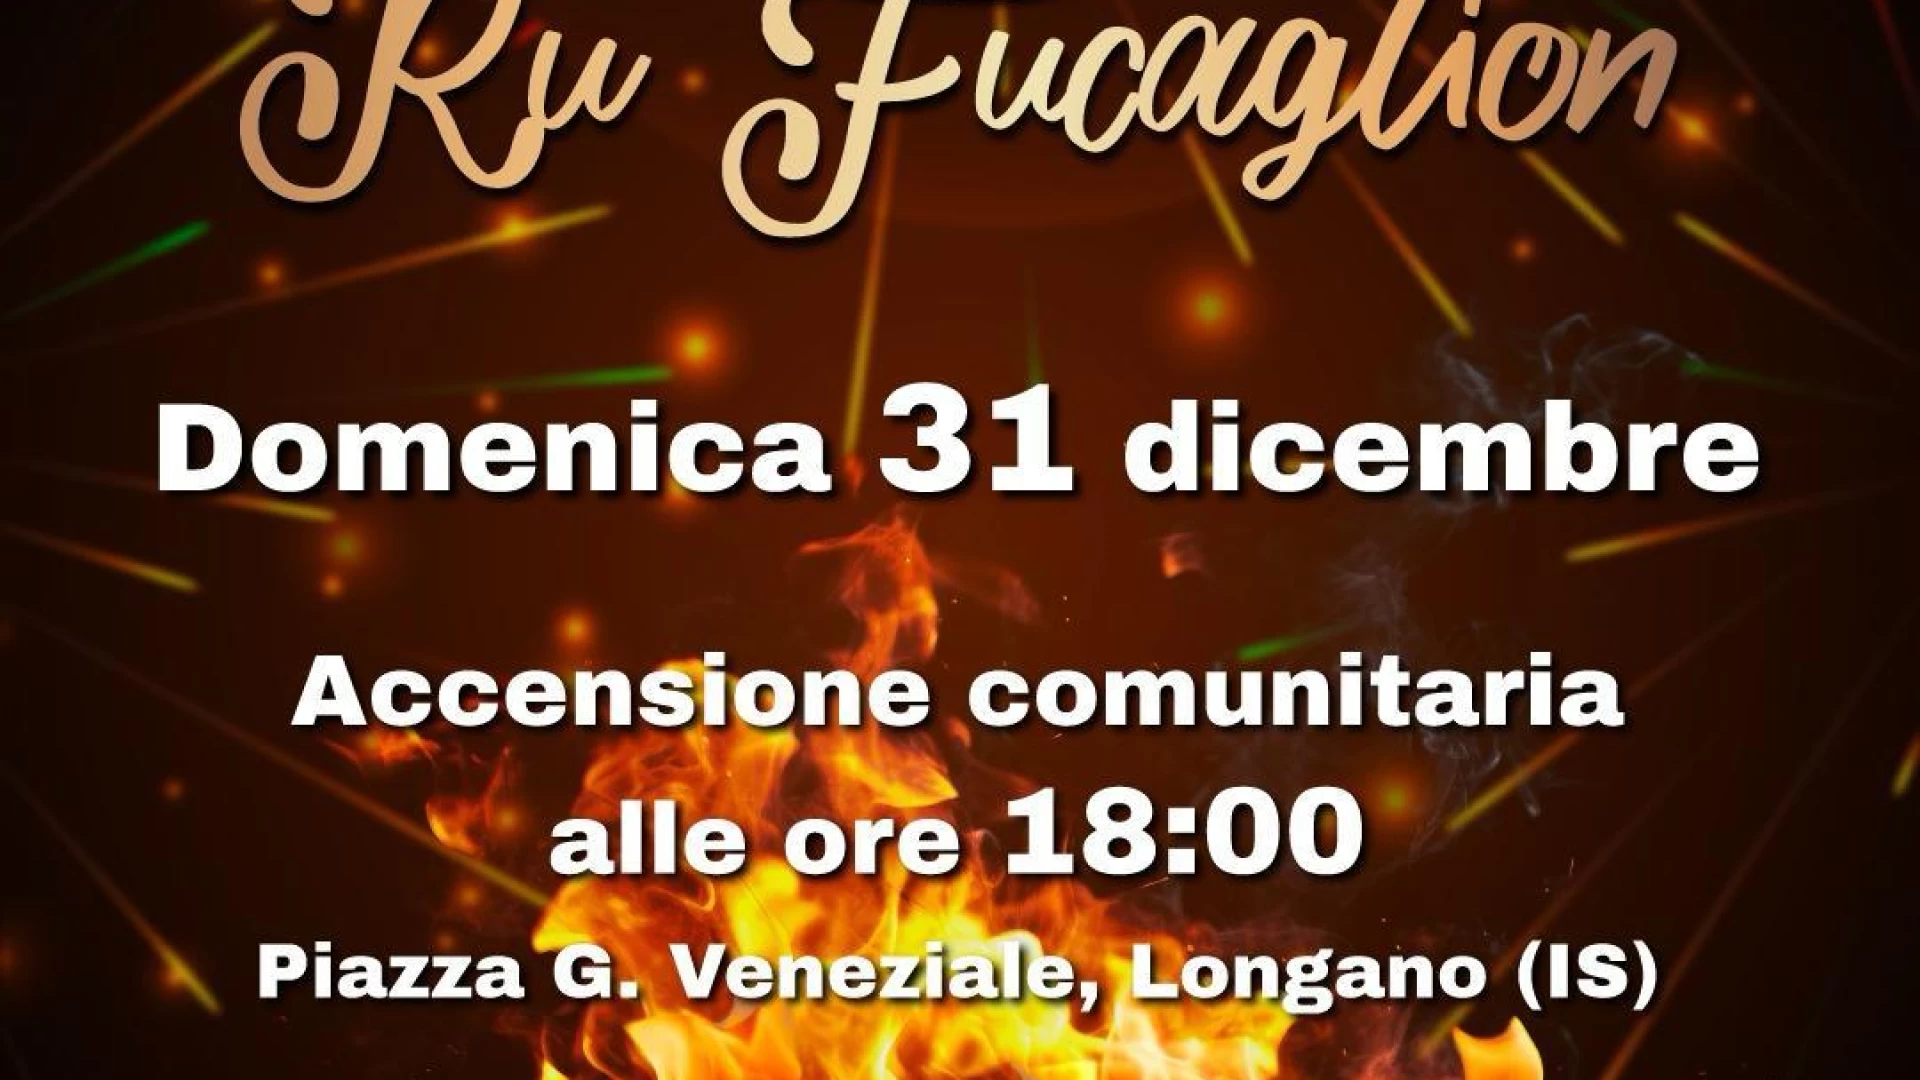 Longano: Accensione del grande fuoco rinnovatore "Ru Fucaglione" per festeggiare il nuovo anno. Appuntamento per il 31 dicembre.